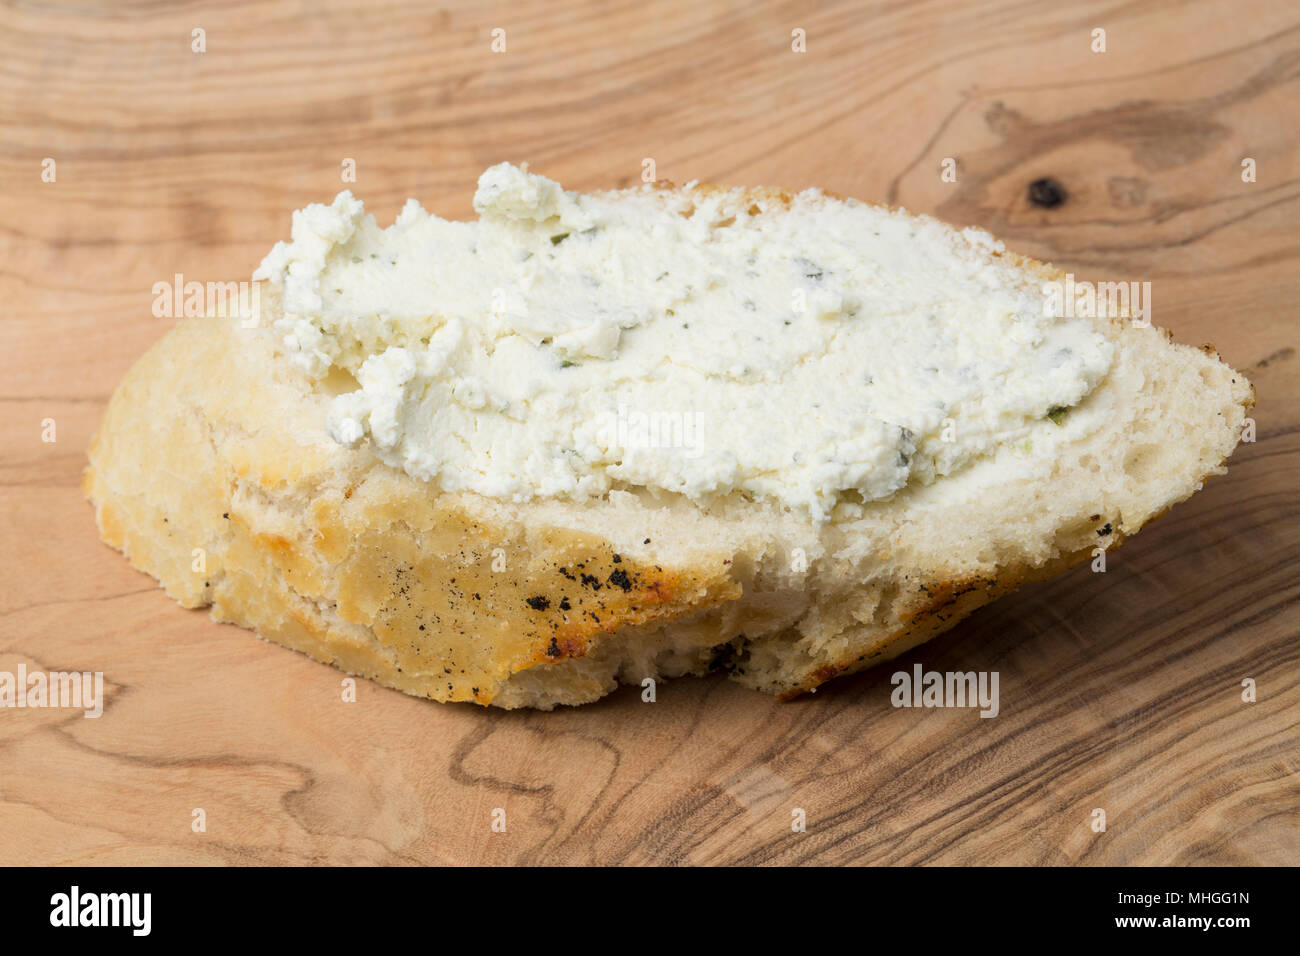 Francese di formaggio Boursin acquistato da un supermercato nel Regno Unito spalmato su una fetta di pane bianco. Boursin è un pieno di grasso morbido formaggio di latte di mucca flav Foto Stock